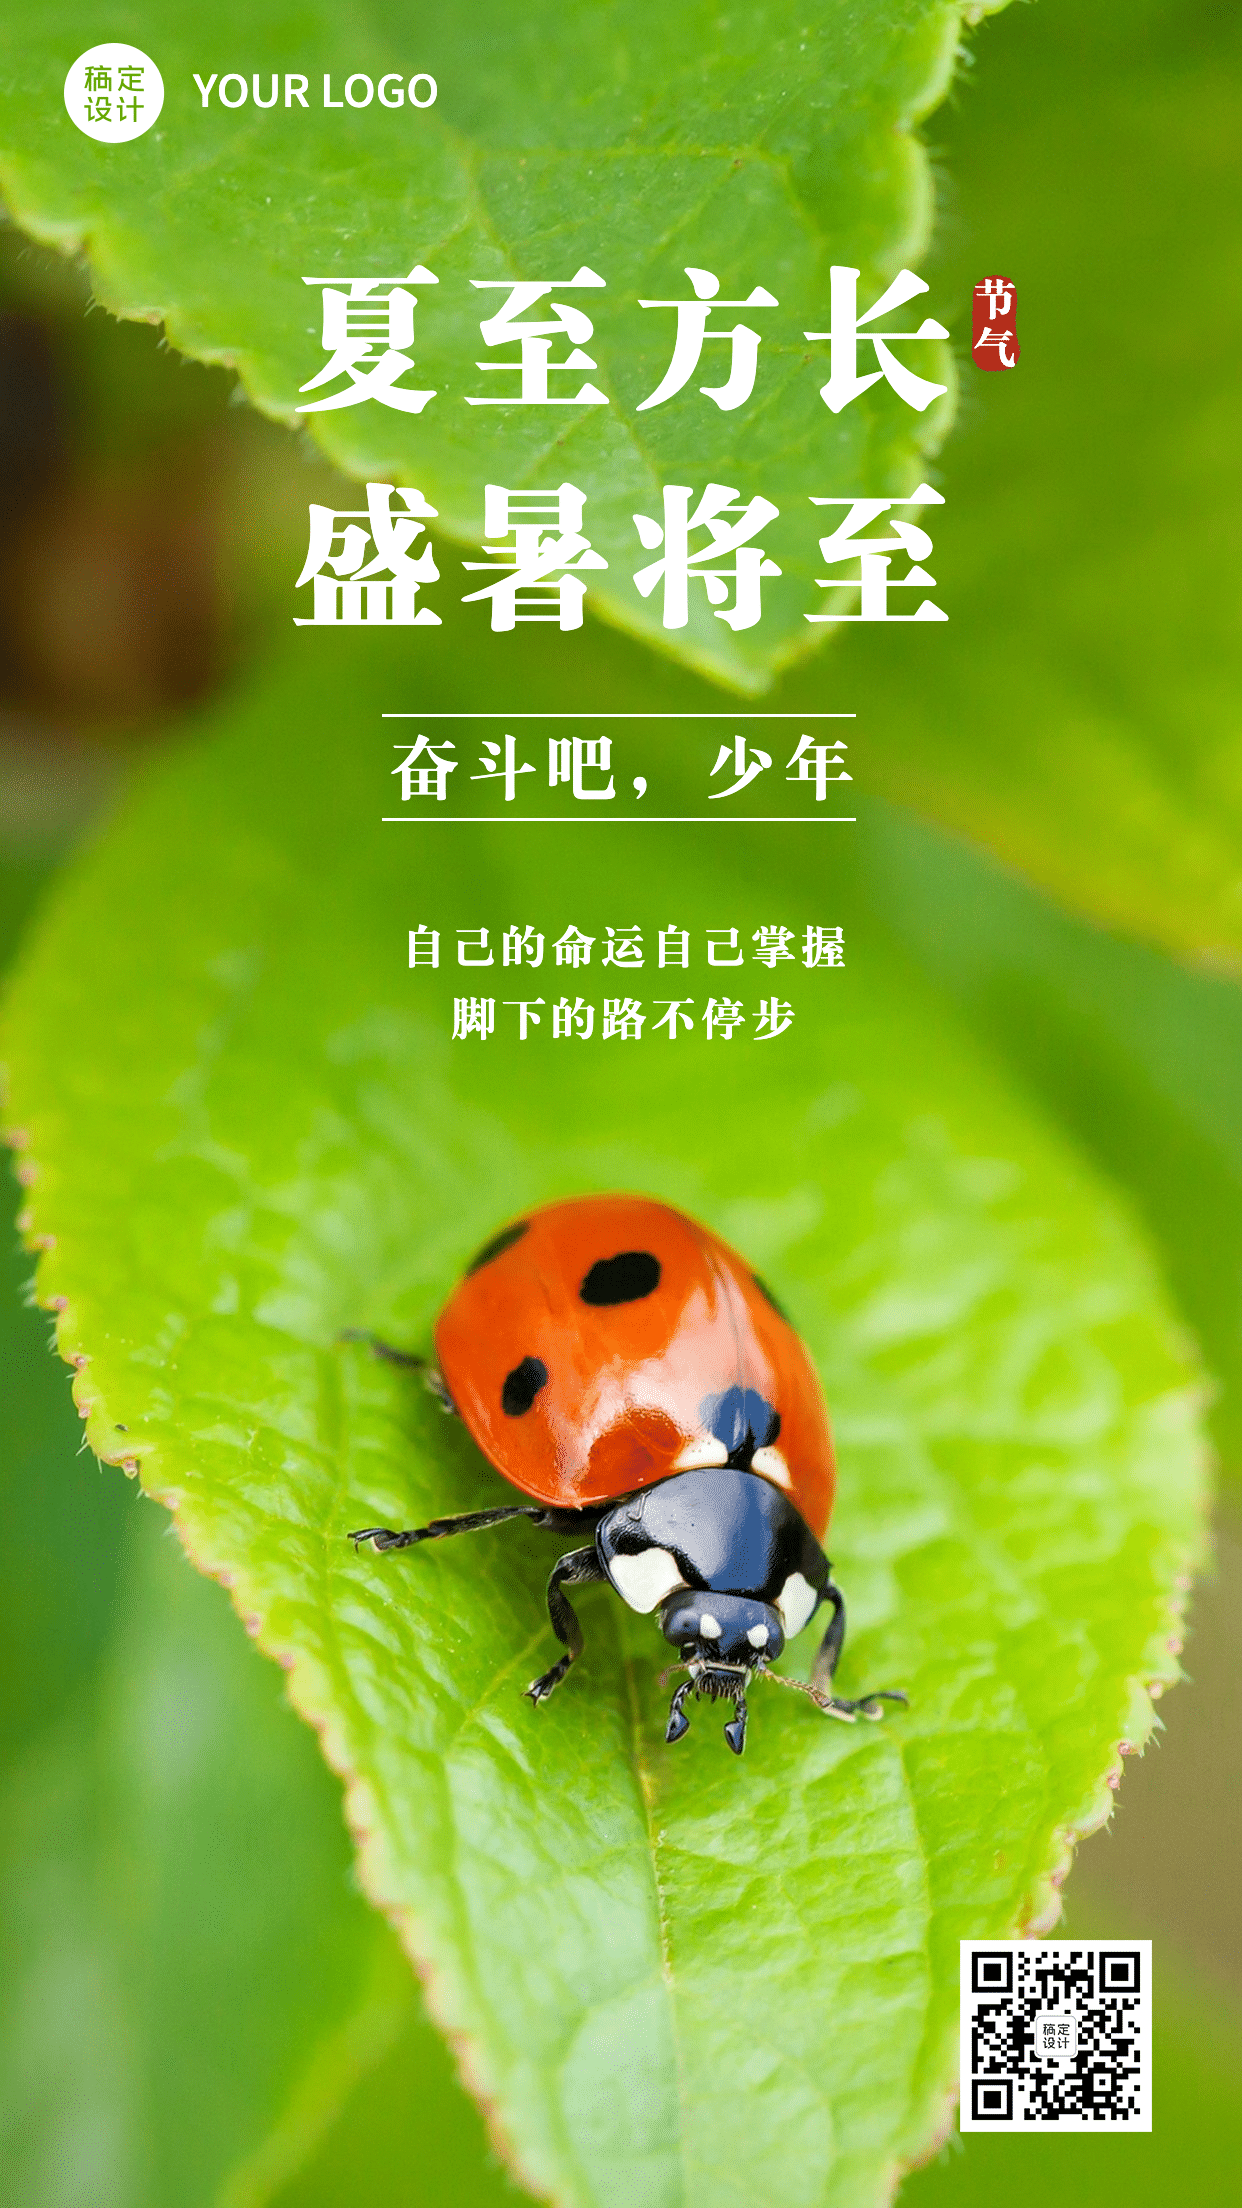 6.21夏至实景风七星瓢虫节气祝福预览效果